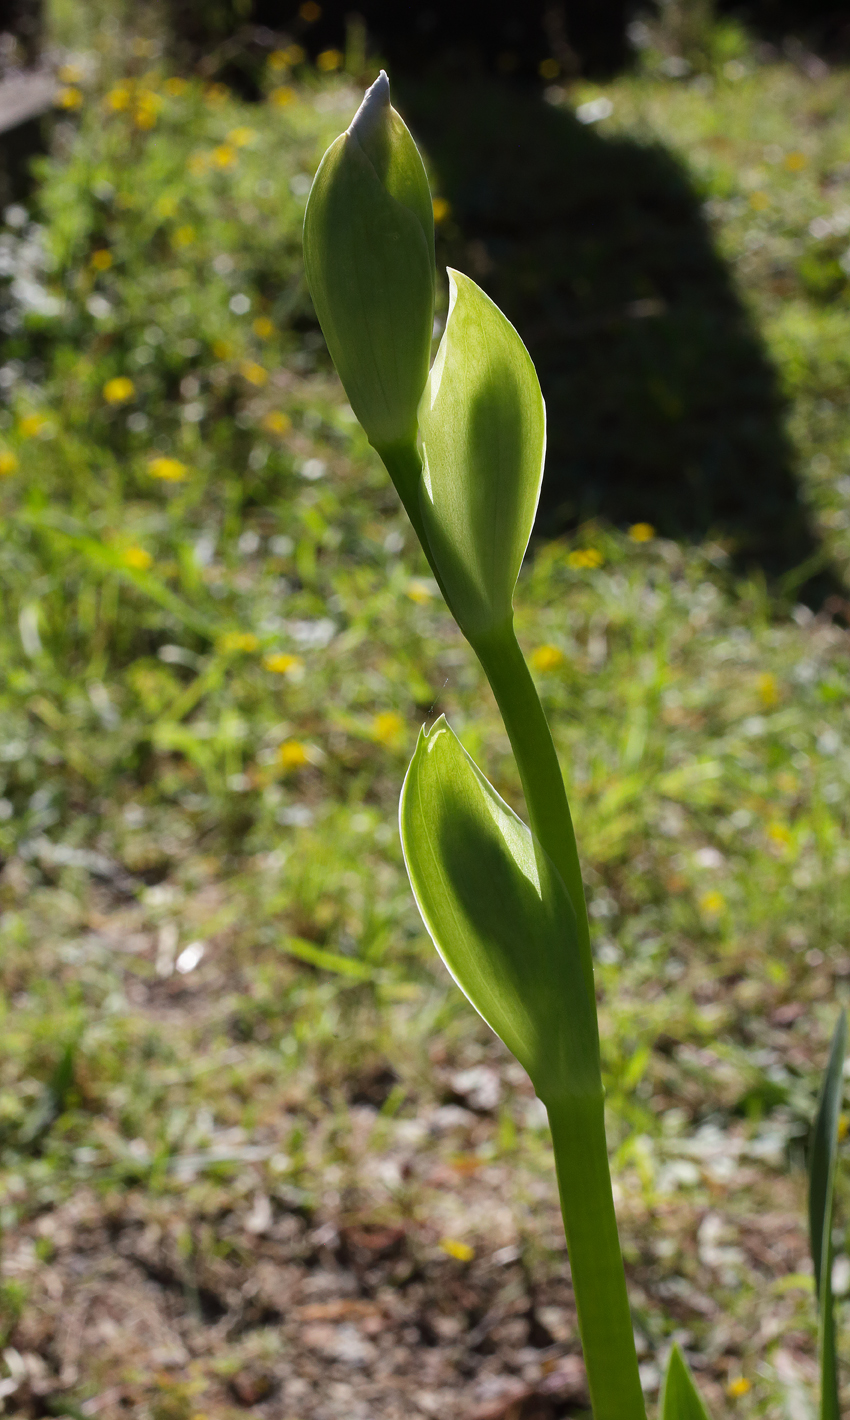 scapo fiorifero di Iris florentina L. con i bocci appena abbozati visti in controluce